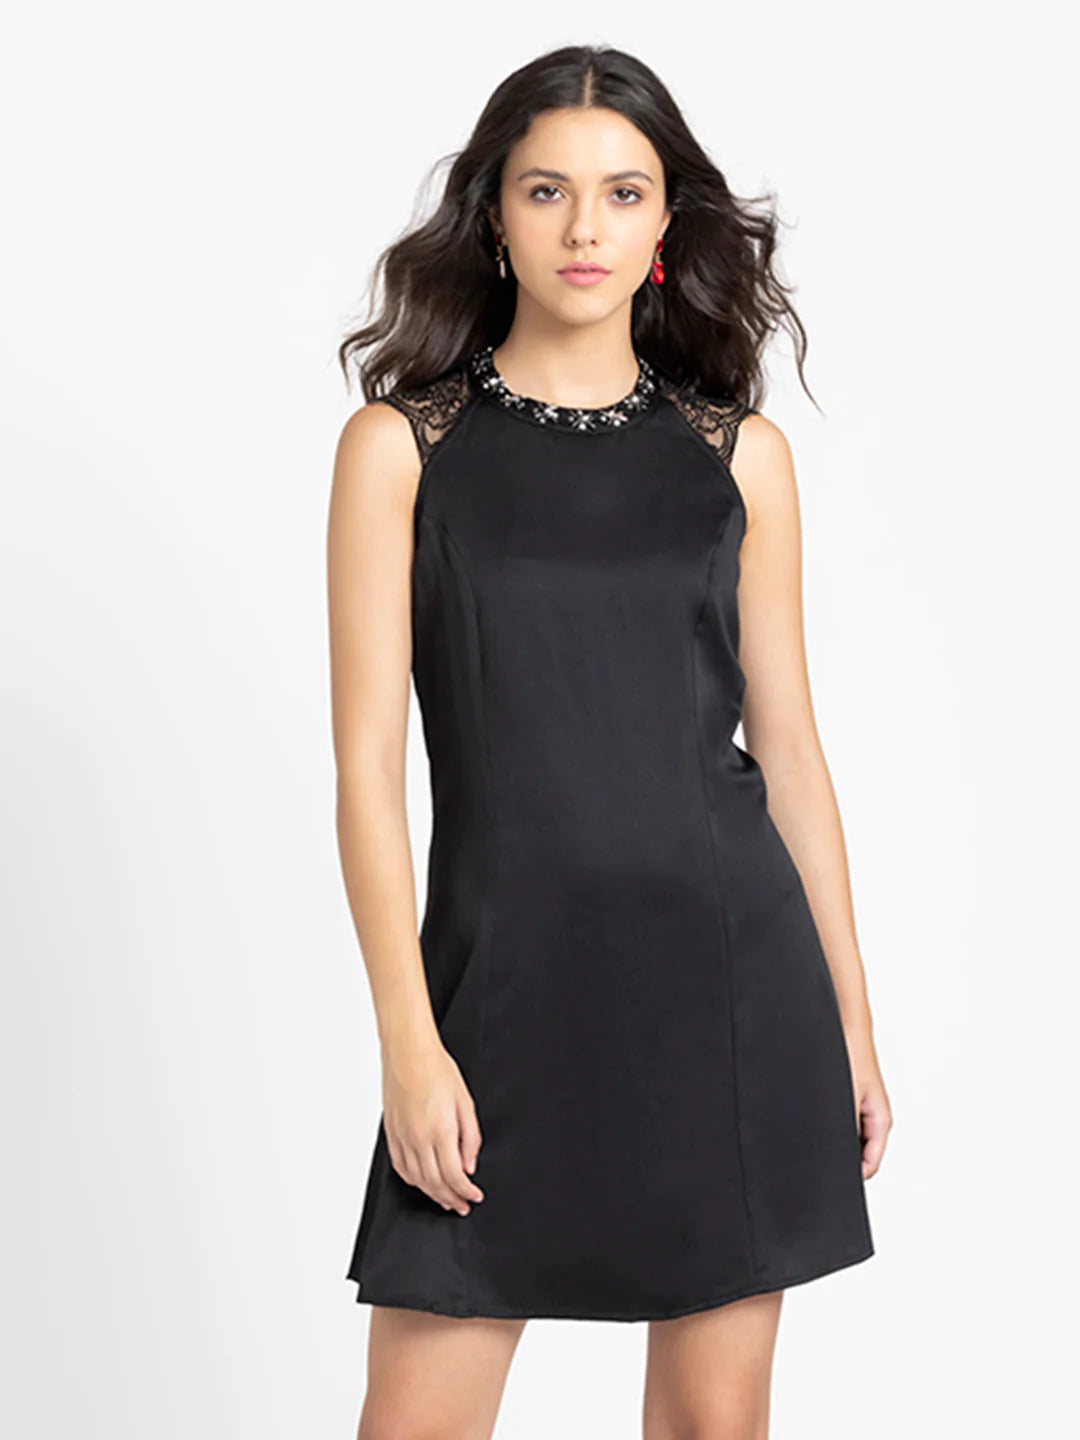 Black Lace Party Dress for Women | Elegant Black Lace Detail Party Dress